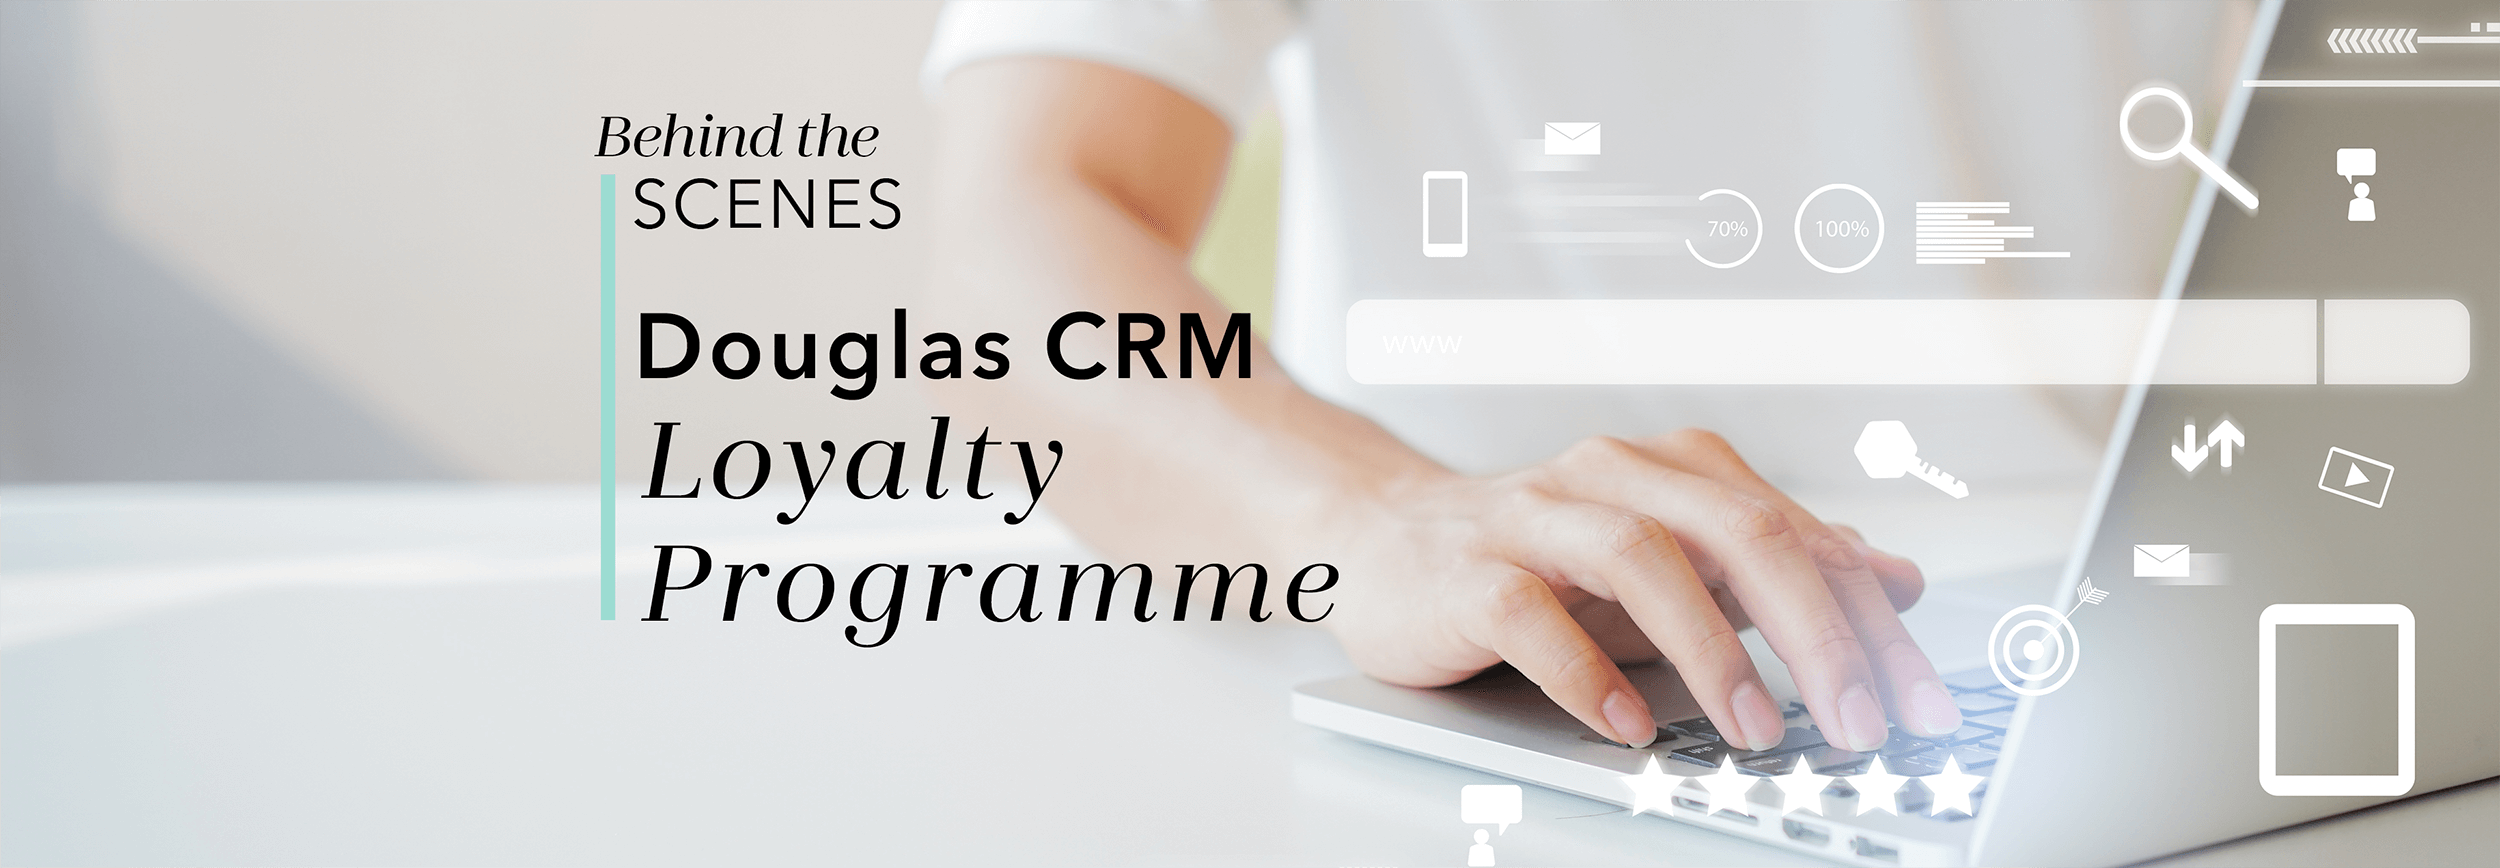 Douglas CRM Loyalty Programme